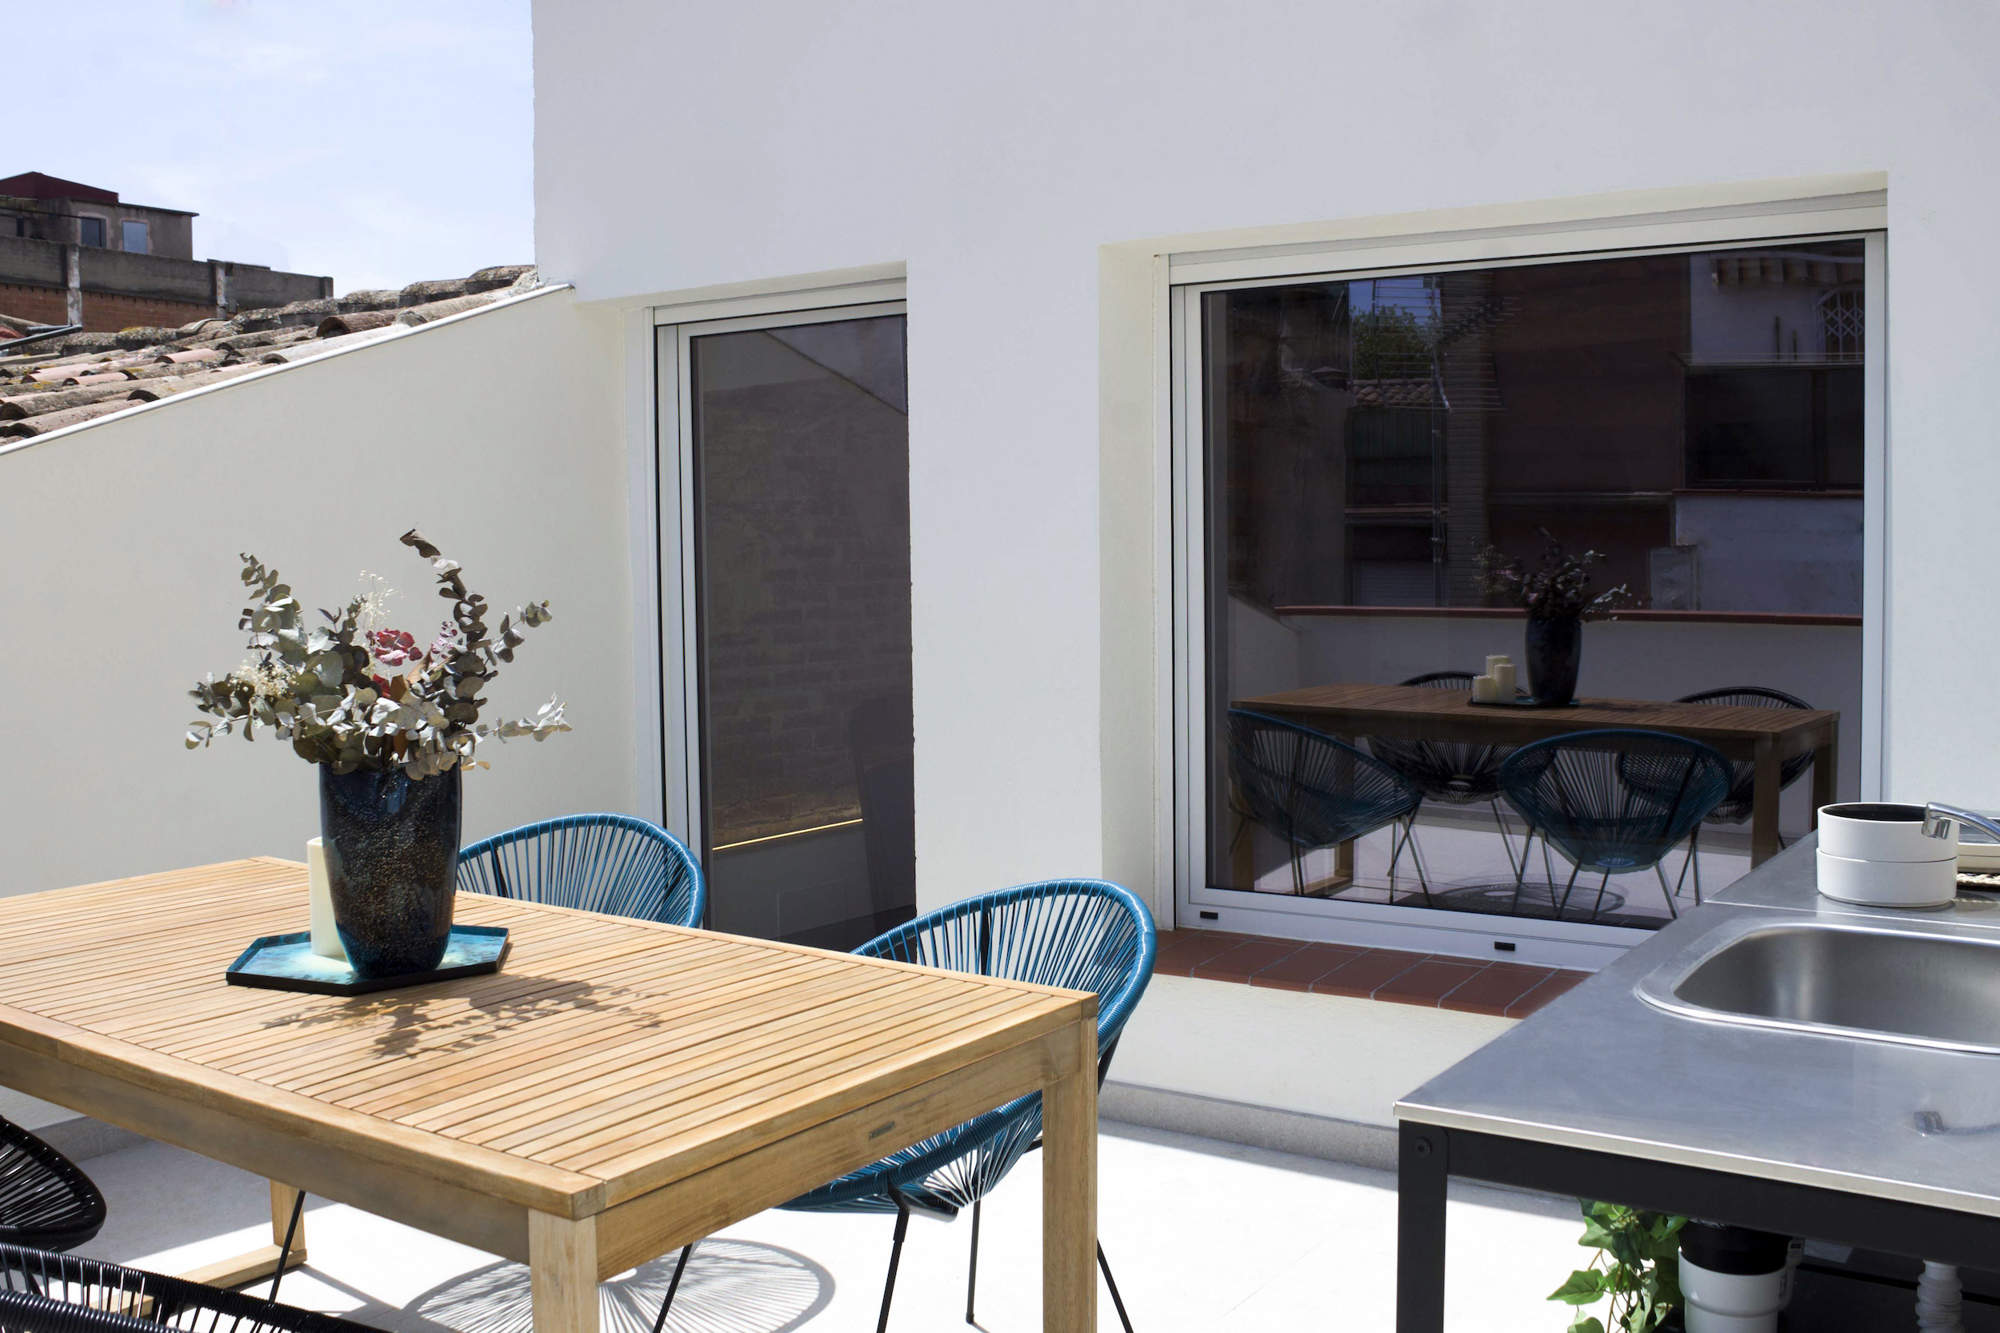 Después de la reforma de una casa en Badalona hecha por Manuel Torres Design